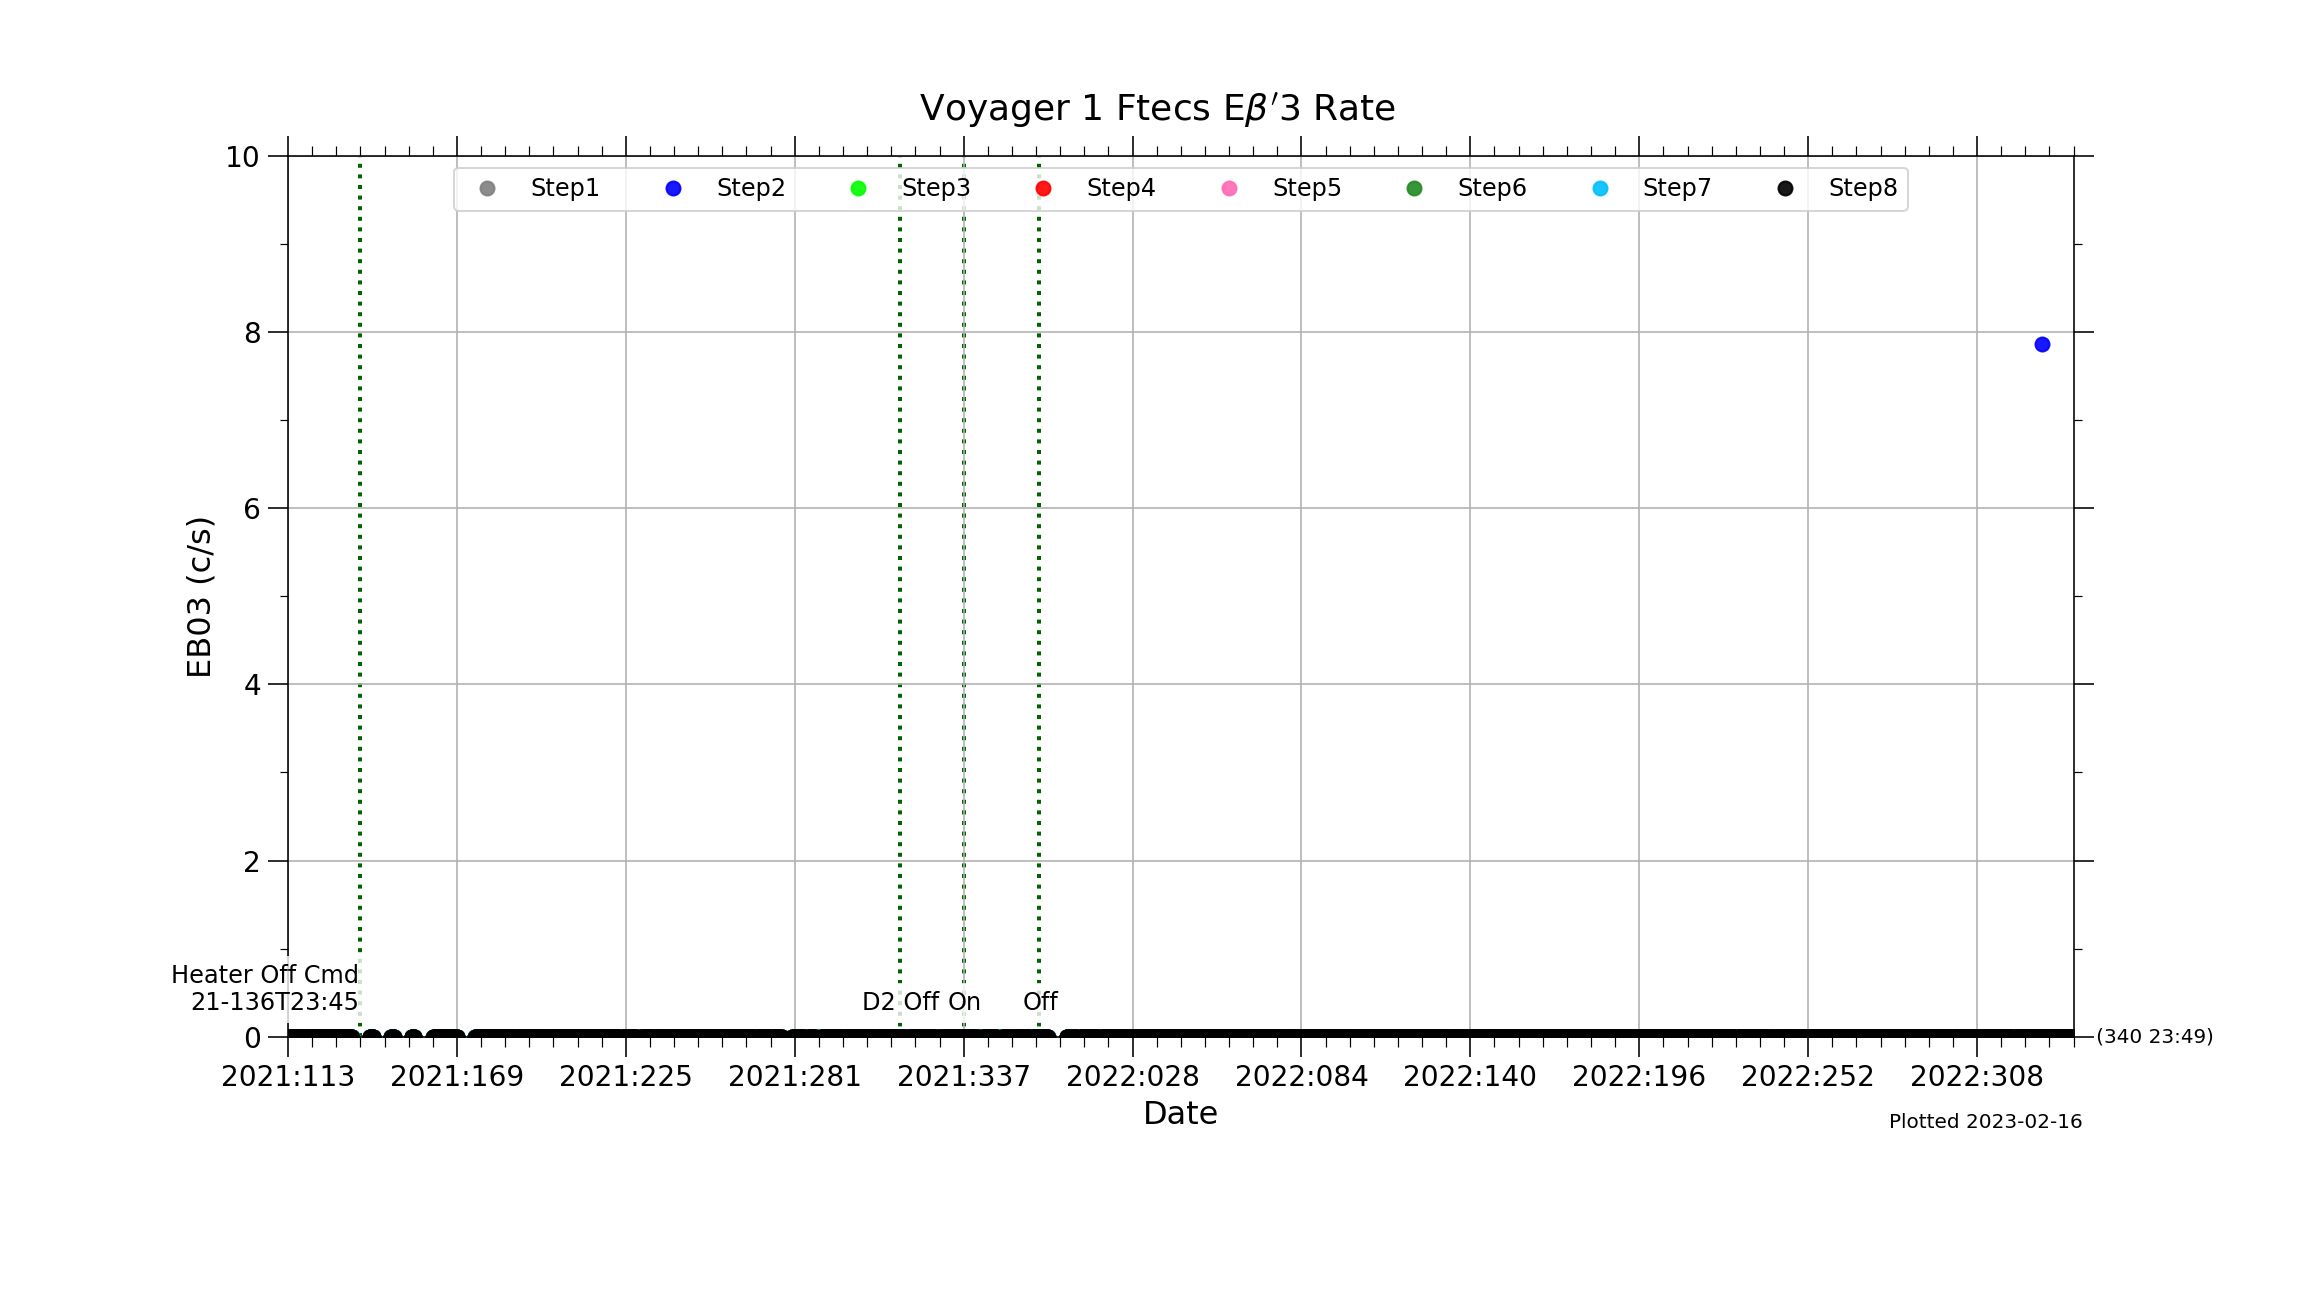 V1_Ftecs_EBP3_Rate_2021-22